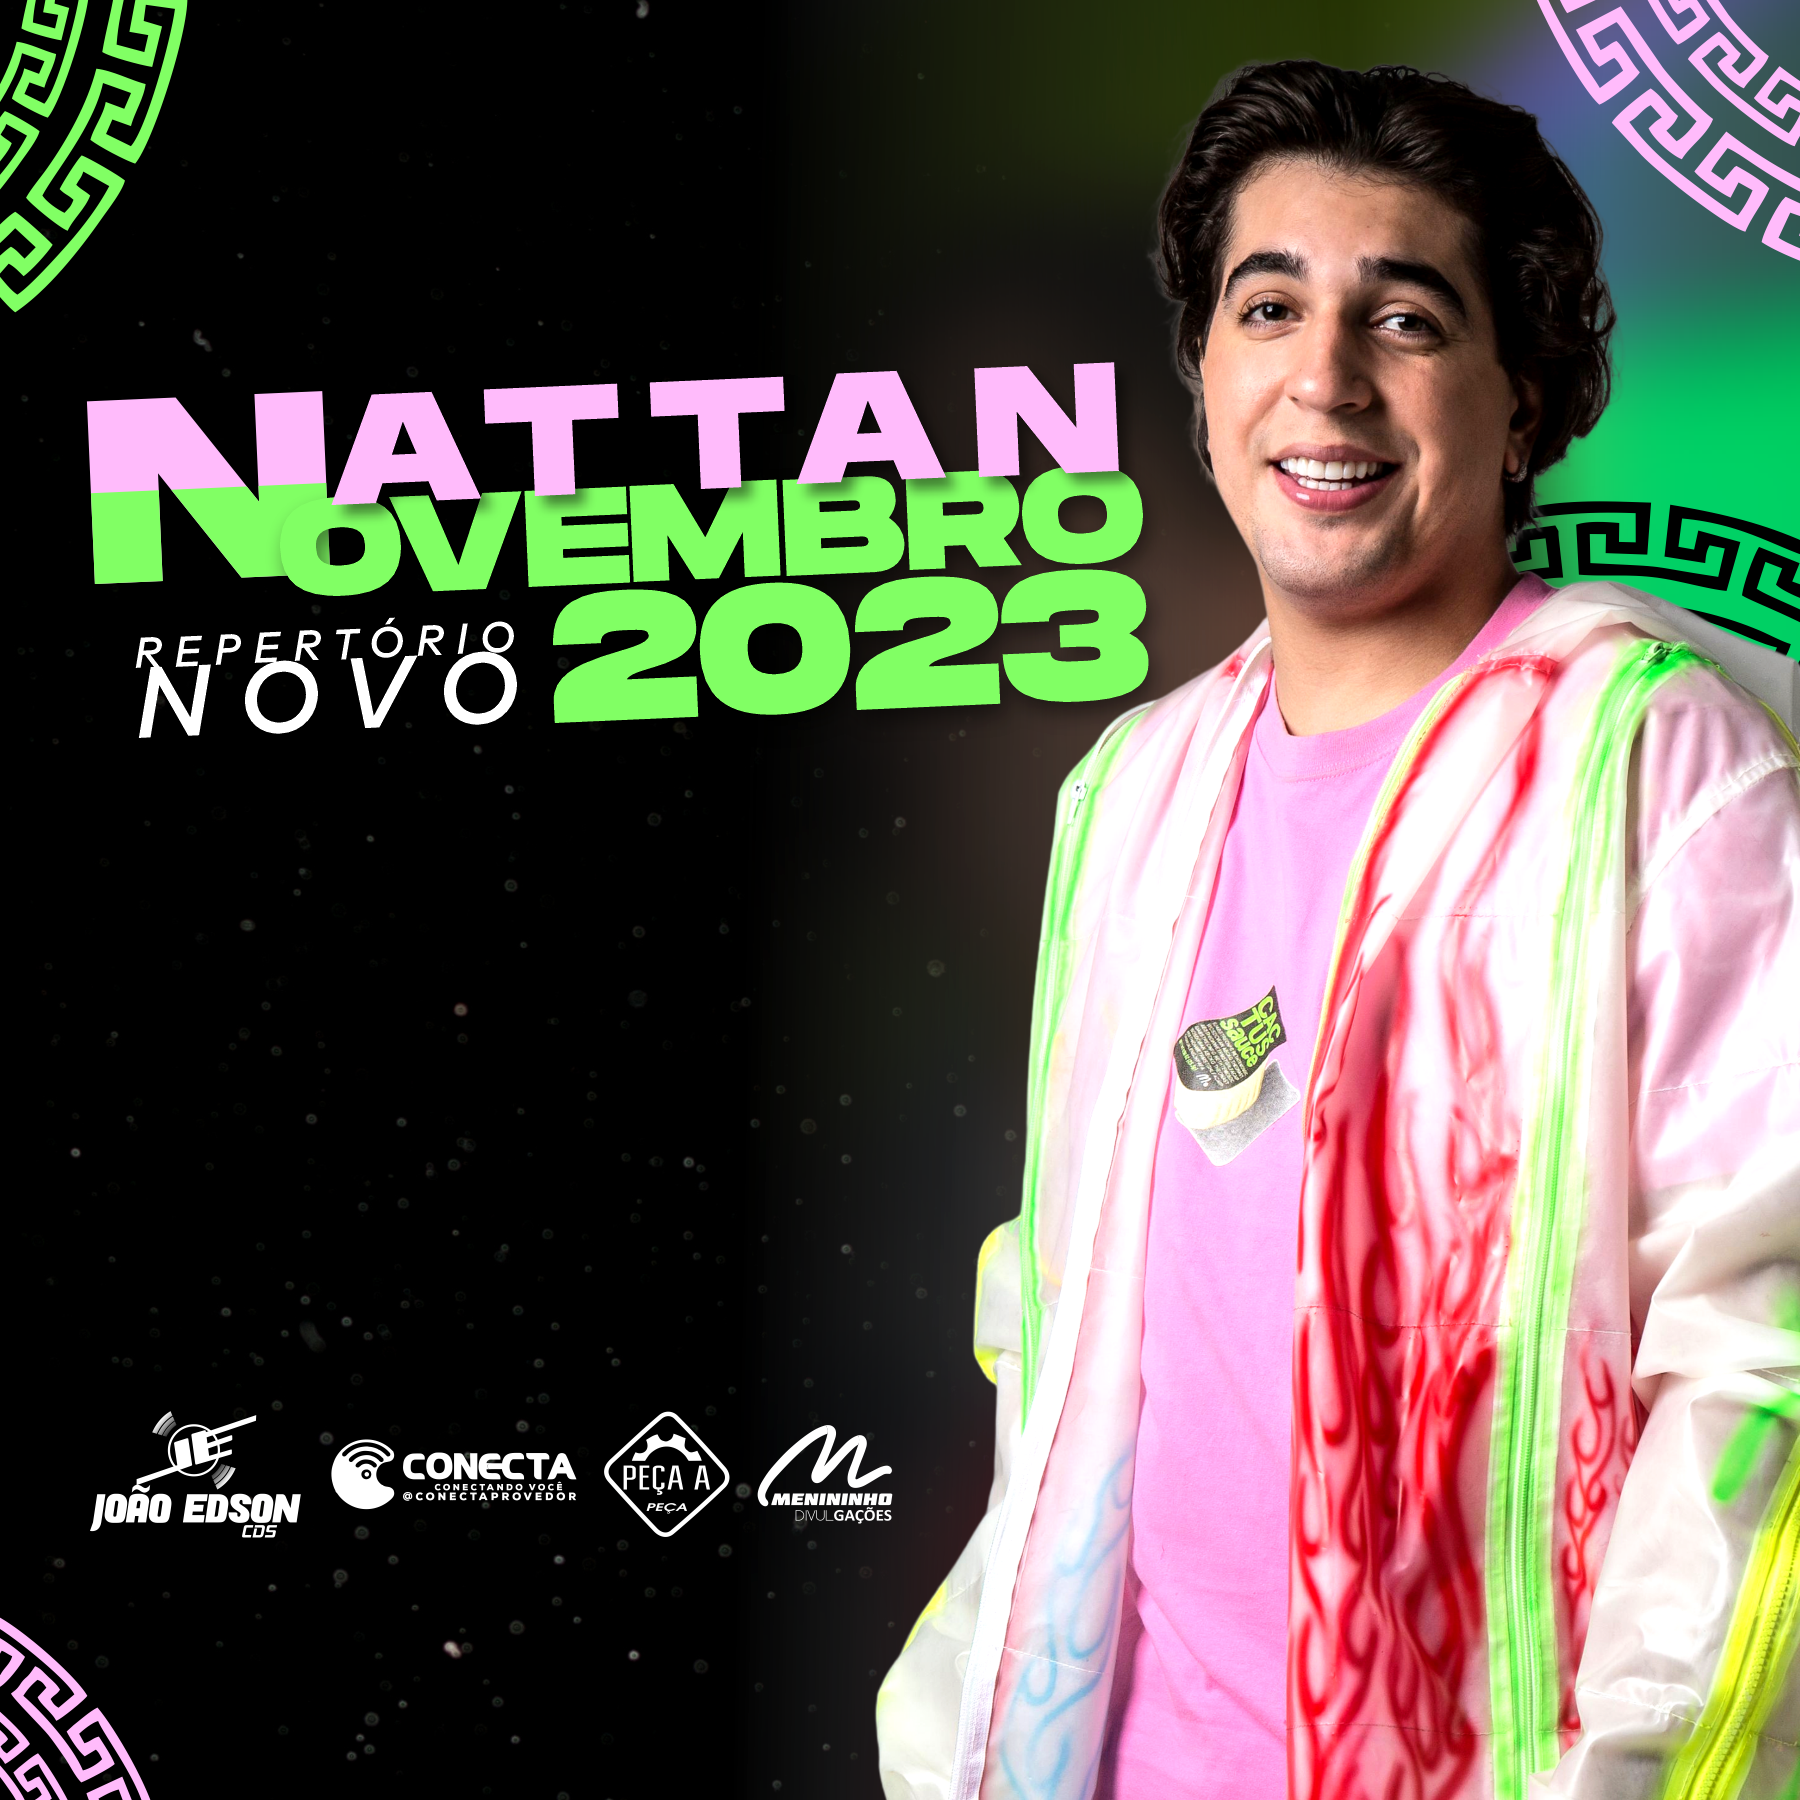 NATTAN NOVEMBRO 2023